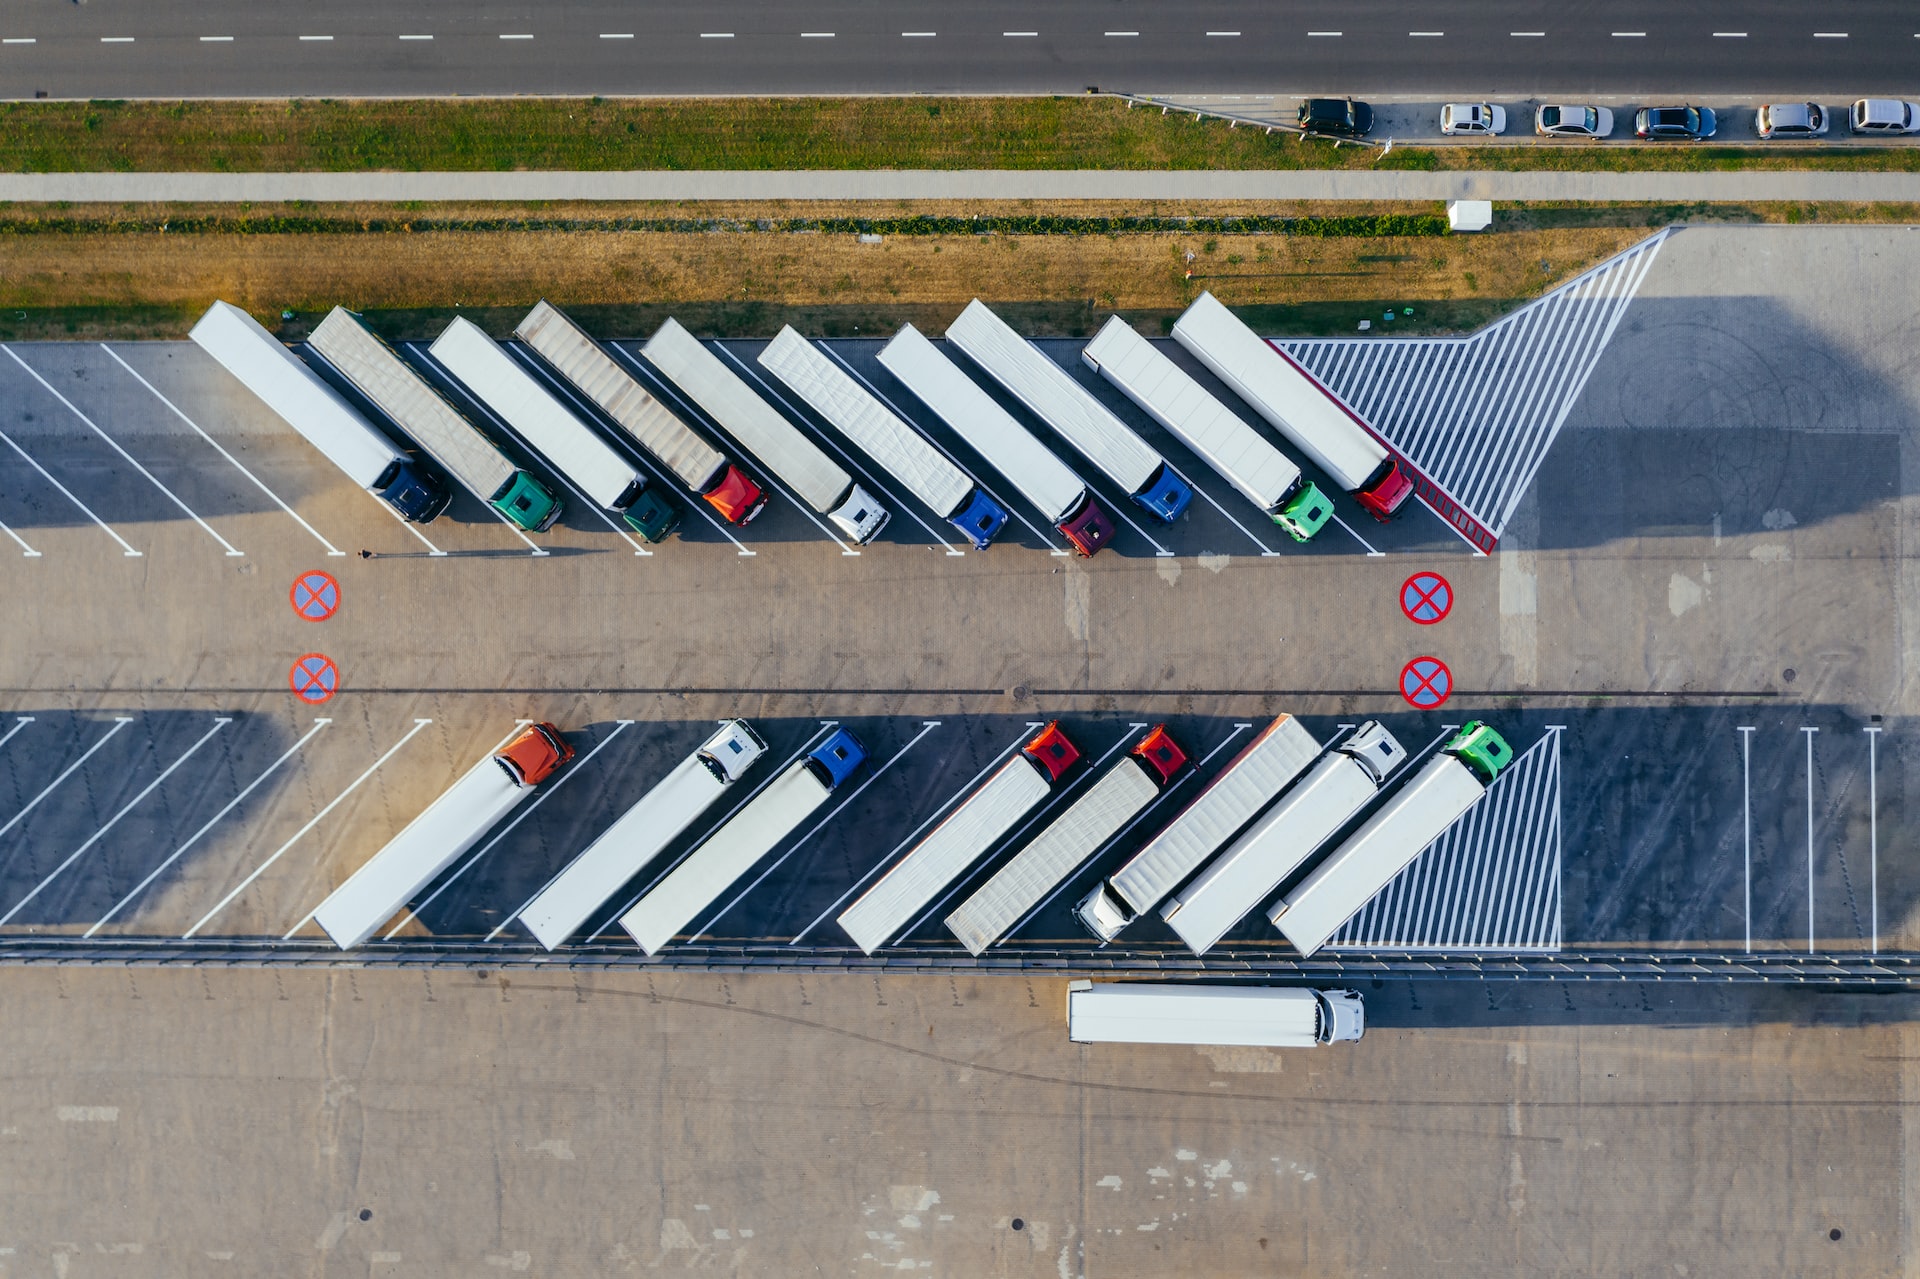 fleet of trucks in a parking lot